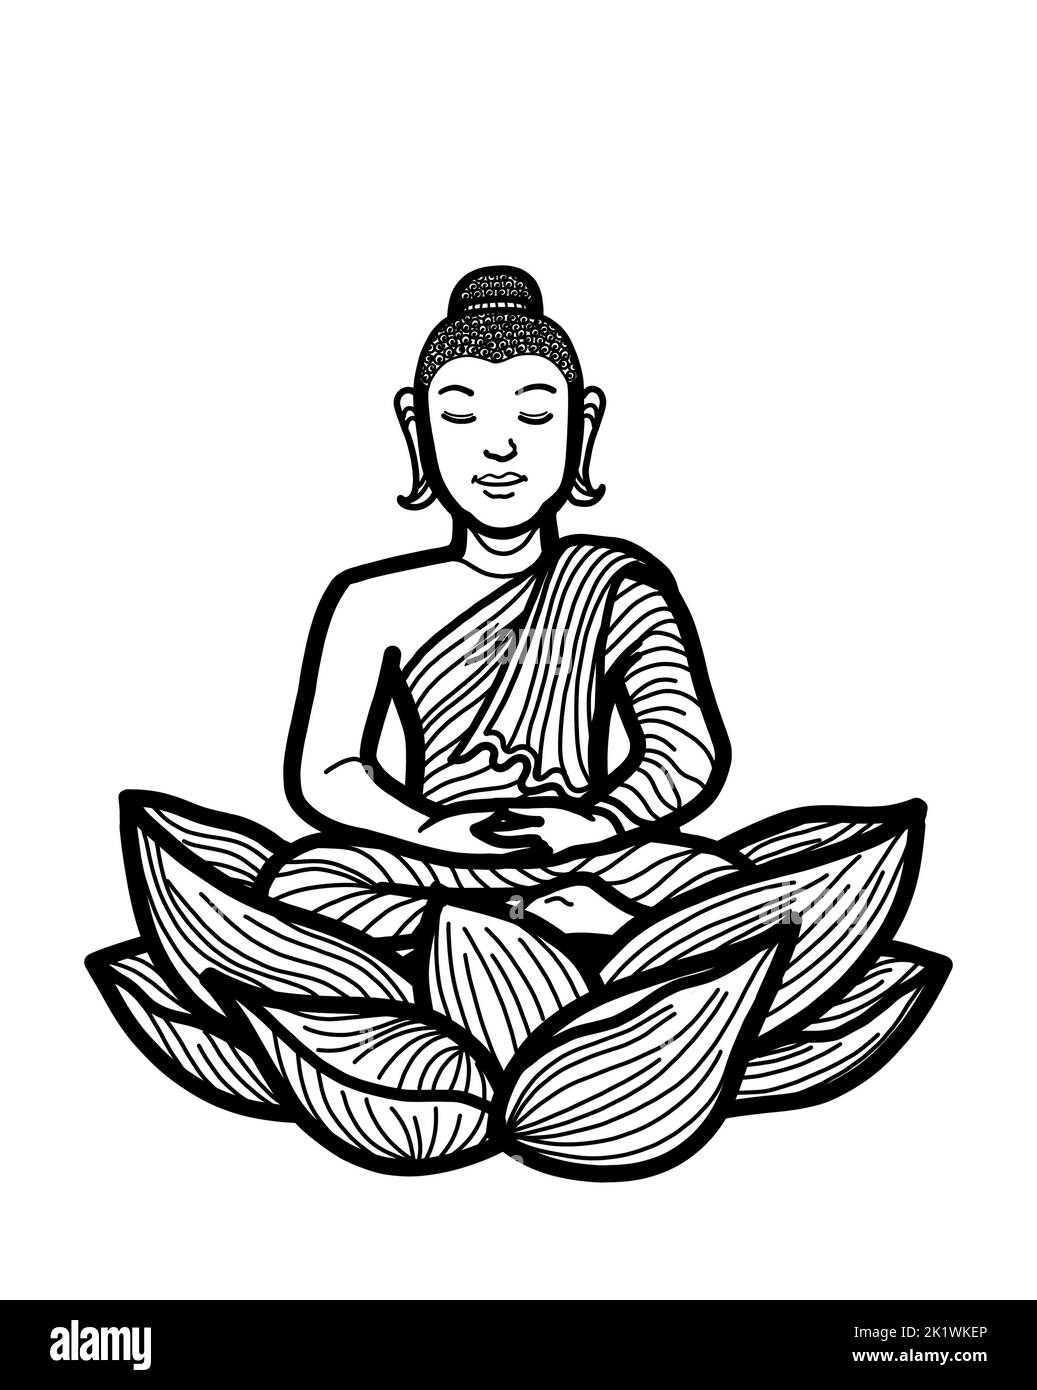 Gautama Bouddha assis dans lotus pose méditant. Pratique de la méditation bouddhiste pour l'illumination, la pleine conscience, la paix, l'harmonie et la spiritualité. Banque D'Images